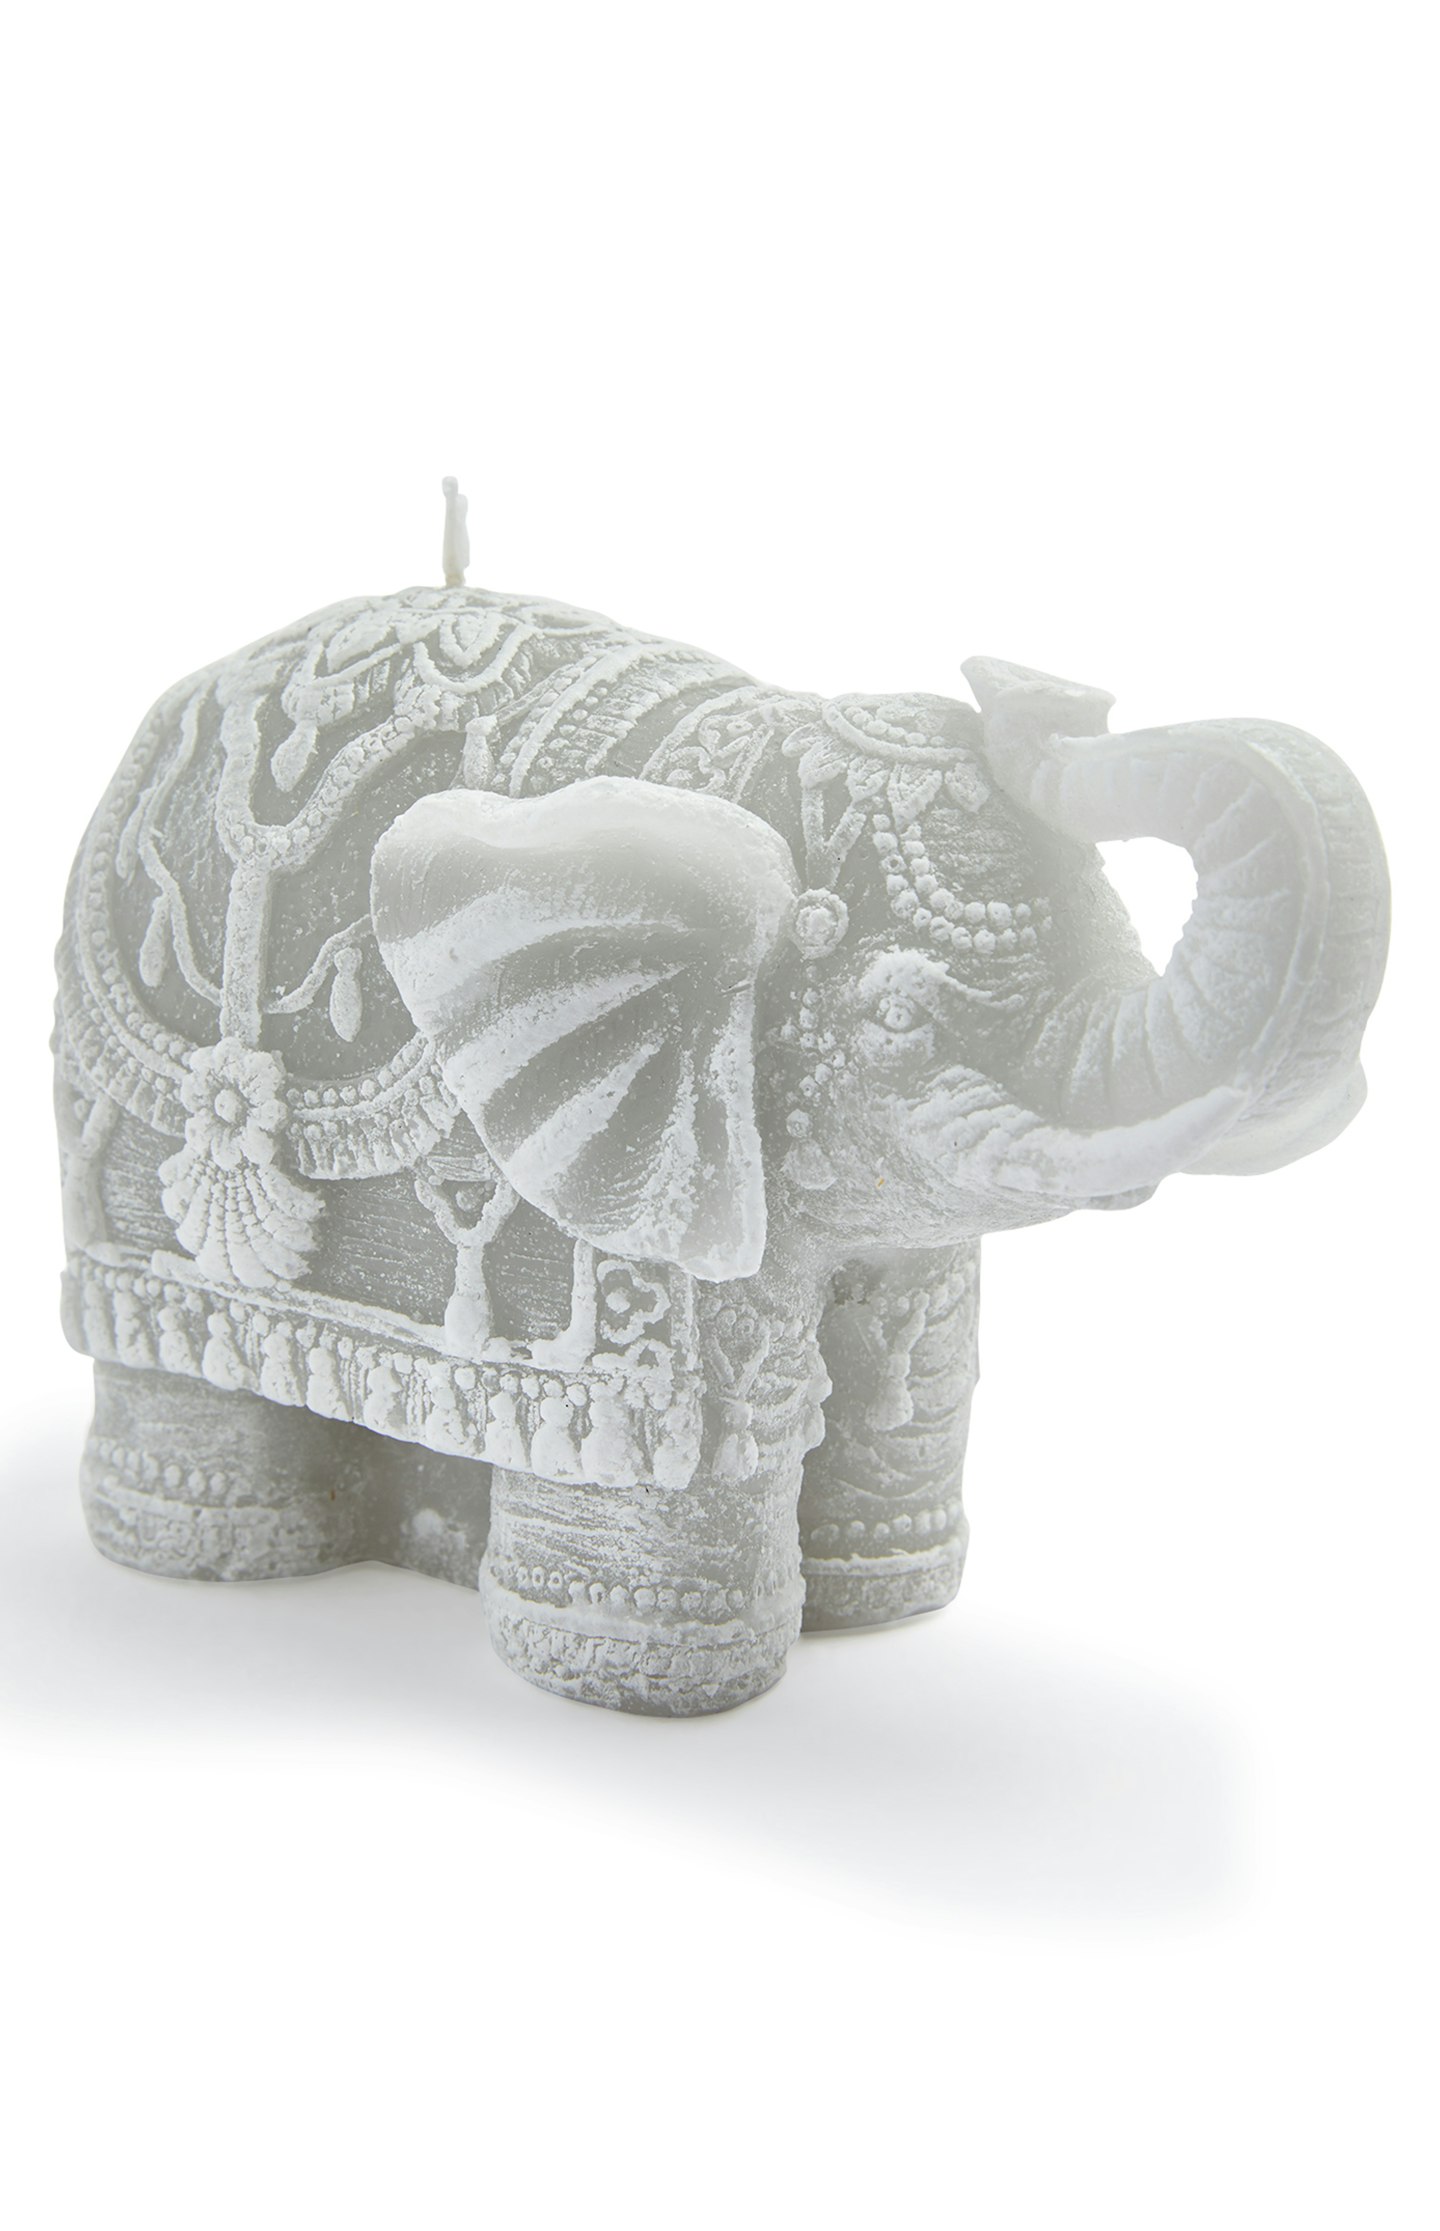 Primark, Elephant-Shaped Candle, £2.50